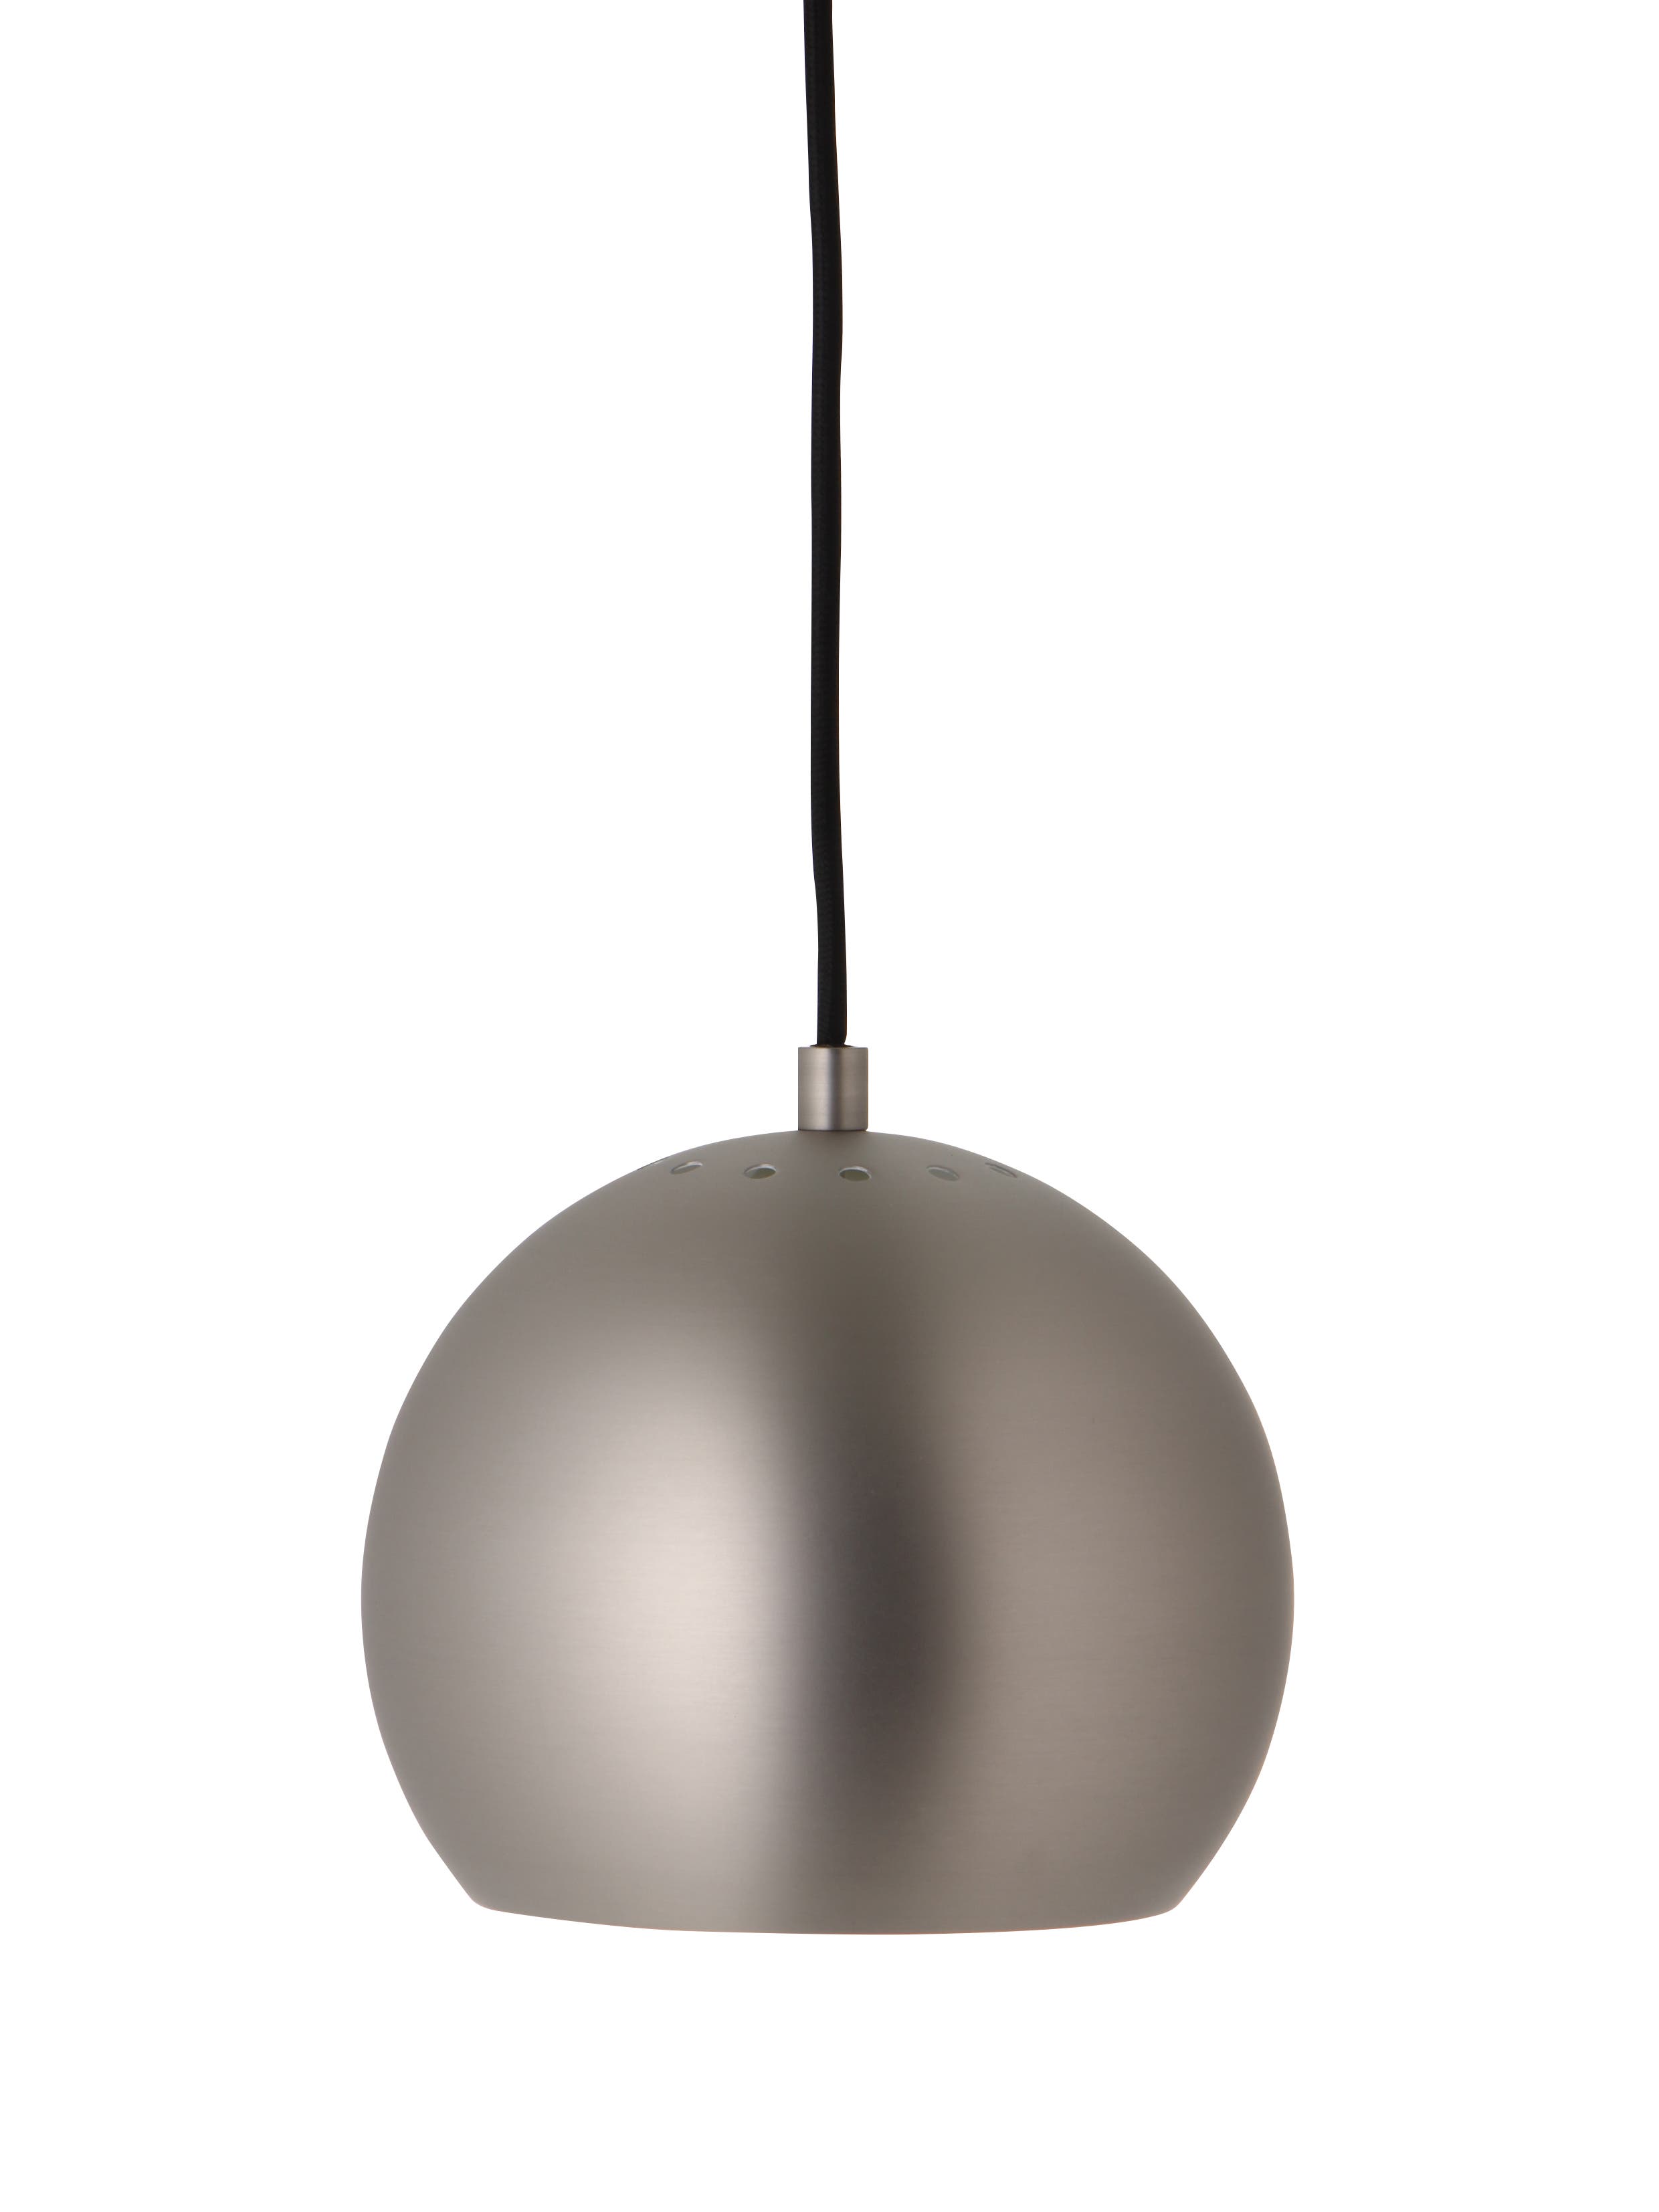 Ball hanglamp